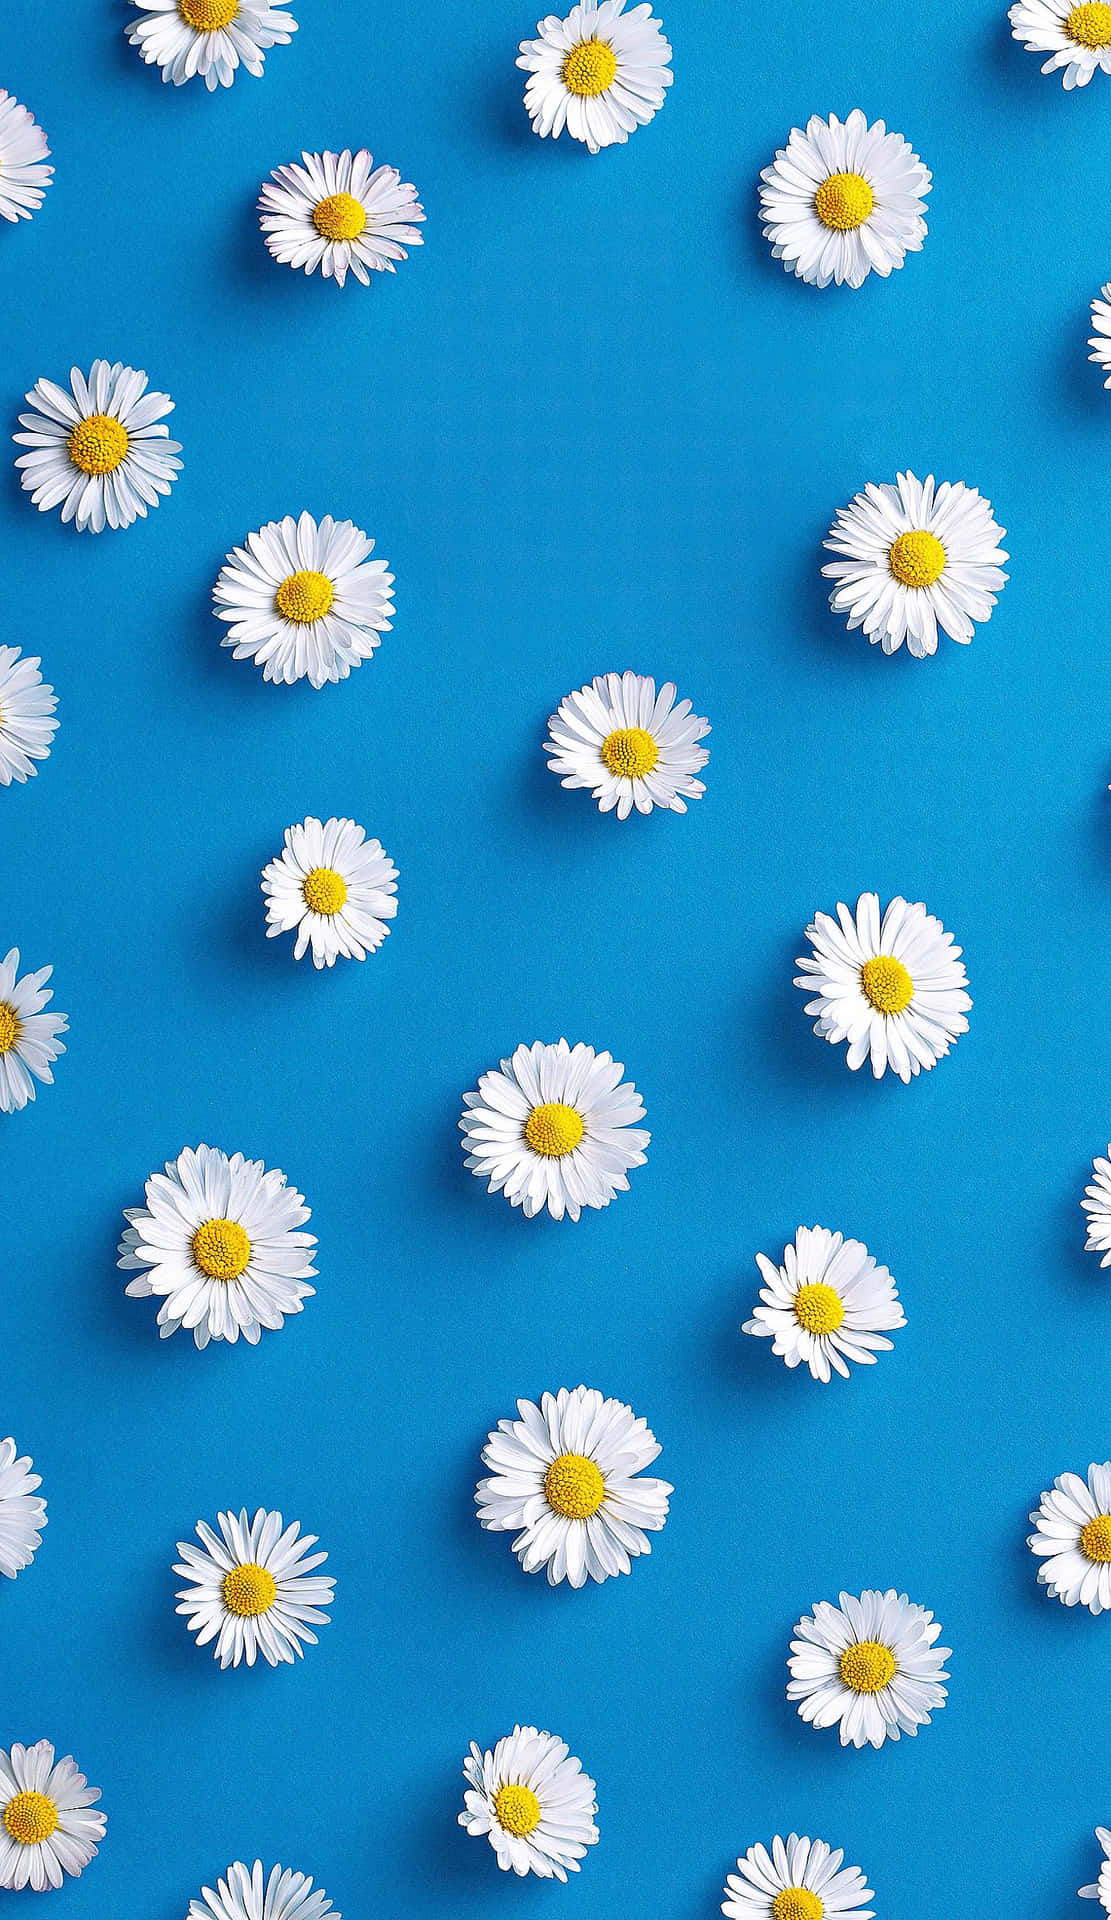 Màn hình nền hoa cúc mùa xuân sẽ mang đến cho bạn một cảm giác dễ chịu giữa những ảnh nền khác. Hãy cho phép bức tranh hoa cúc mang đến niềm vui và niềm tin cho ngày mới của bạn. 